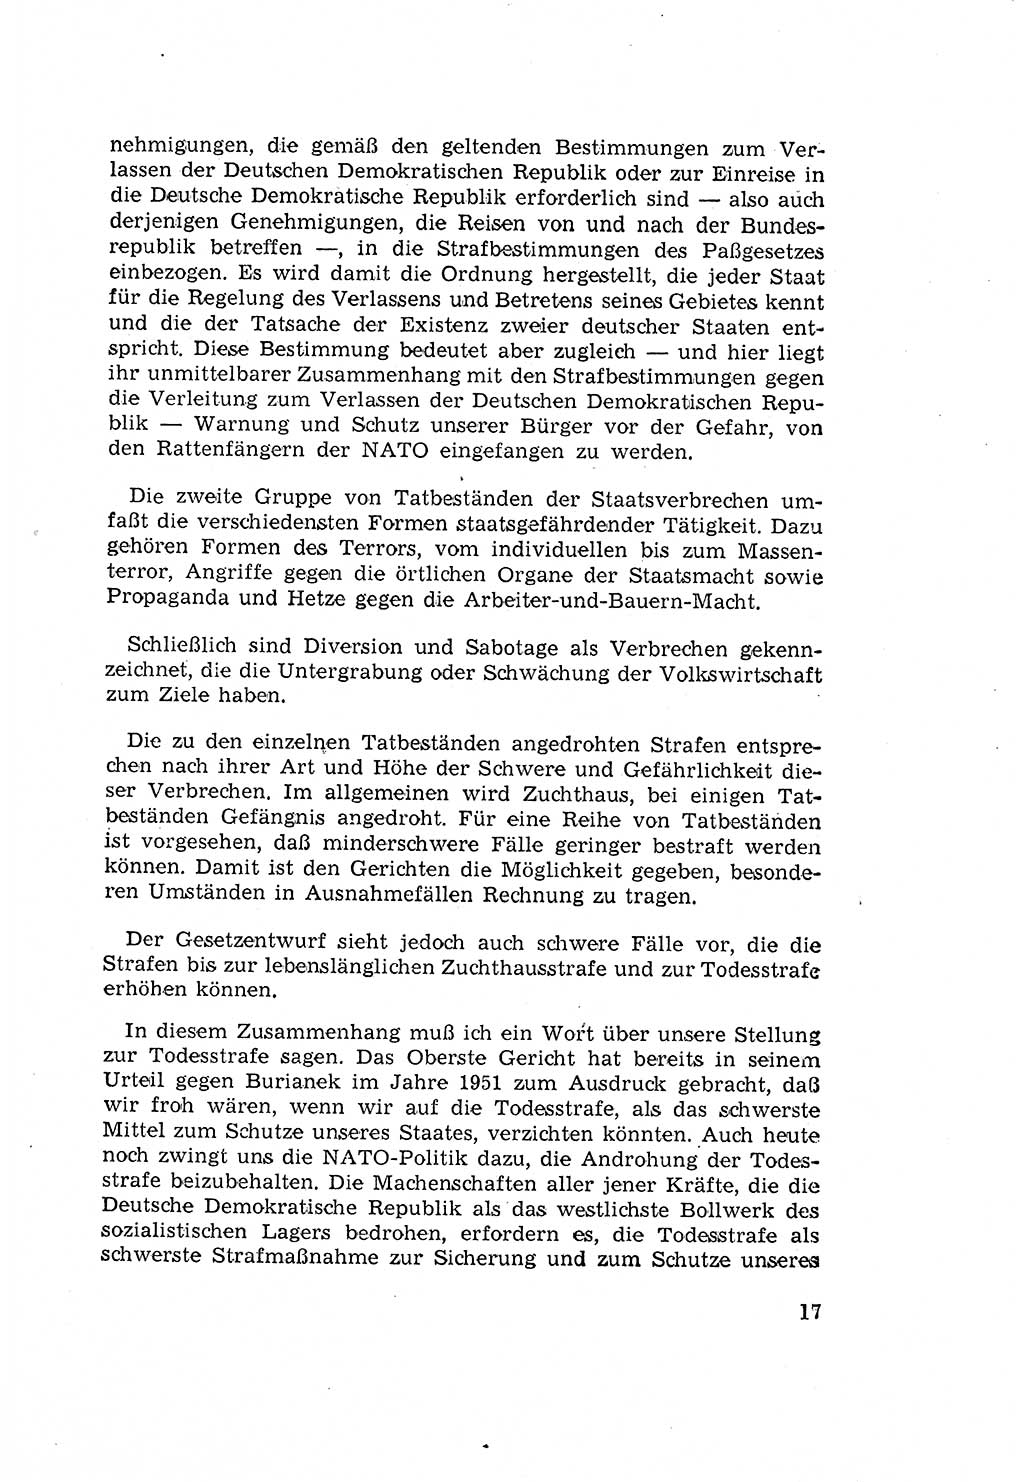 Zum Erlaß des Gesetzes zur Ergänzung des Strafgesetzbuches (StGB), Strafergänzungsgesetz (StEG) [Deutsche Demokratische Republik (DDR)] 1957, Seite 17 (StGB StEG DDR 1957, S. 17)